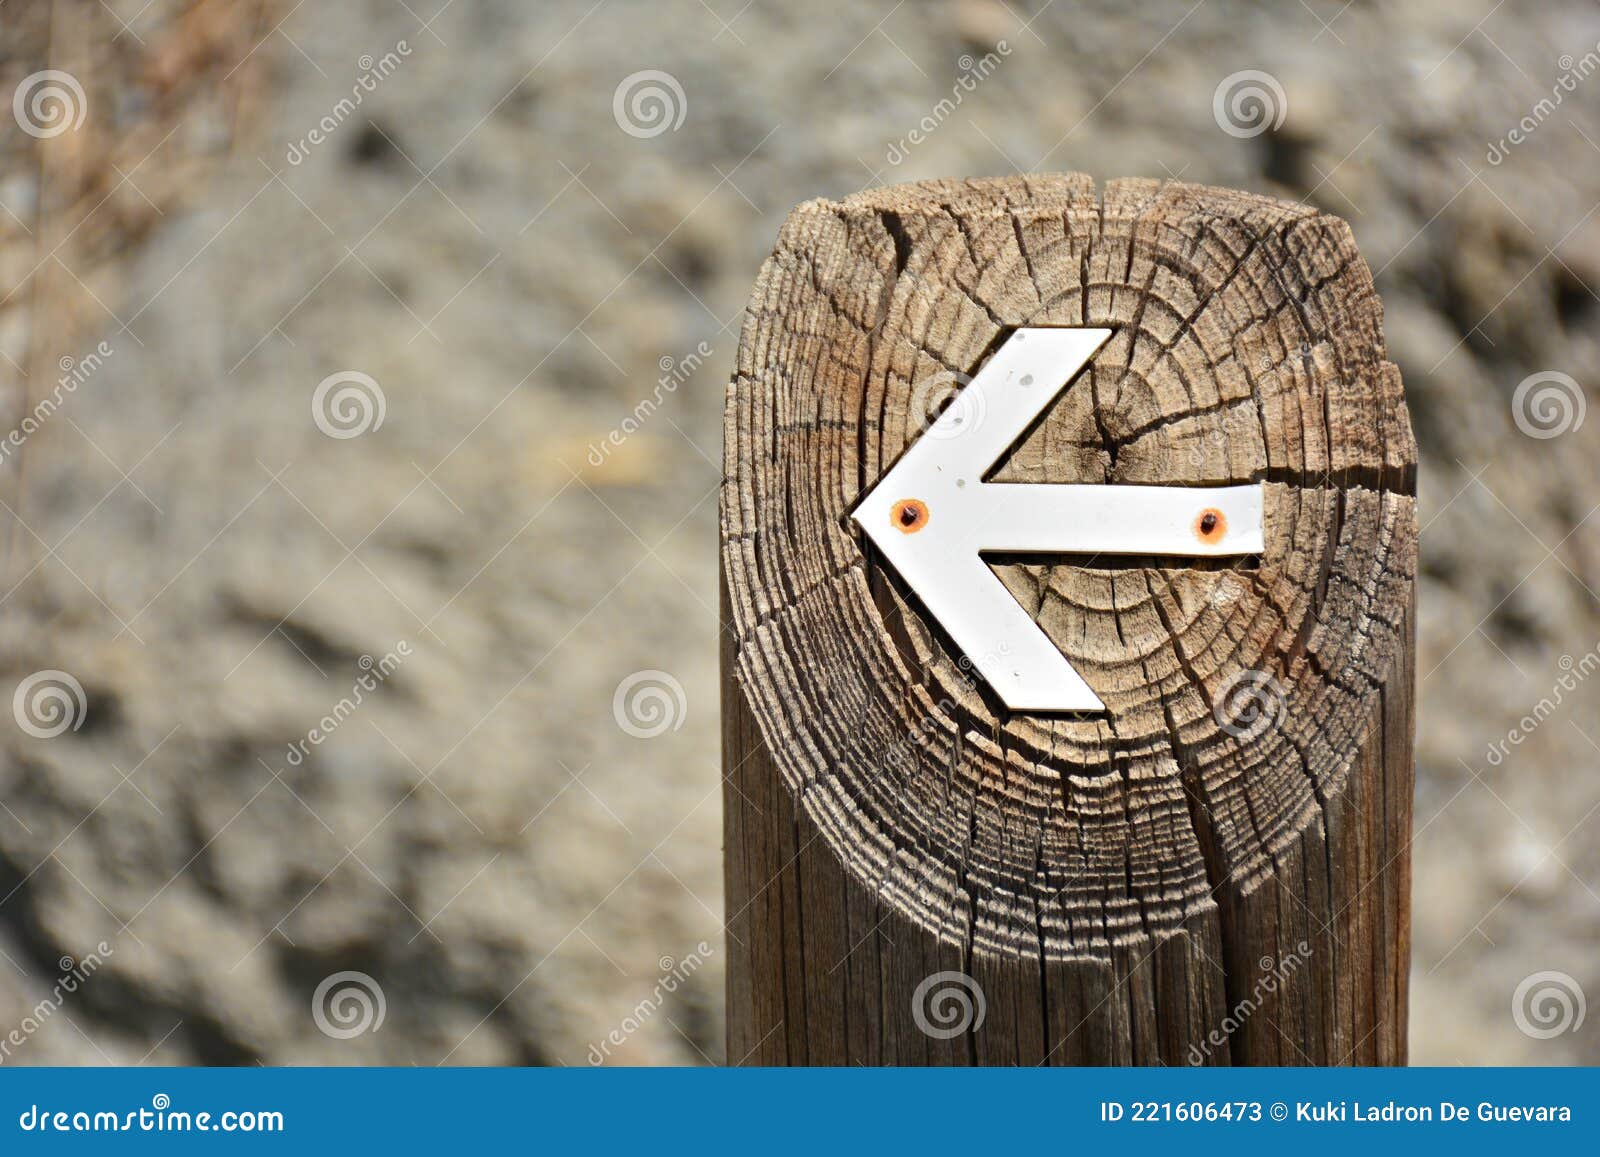 white arrow put into a log